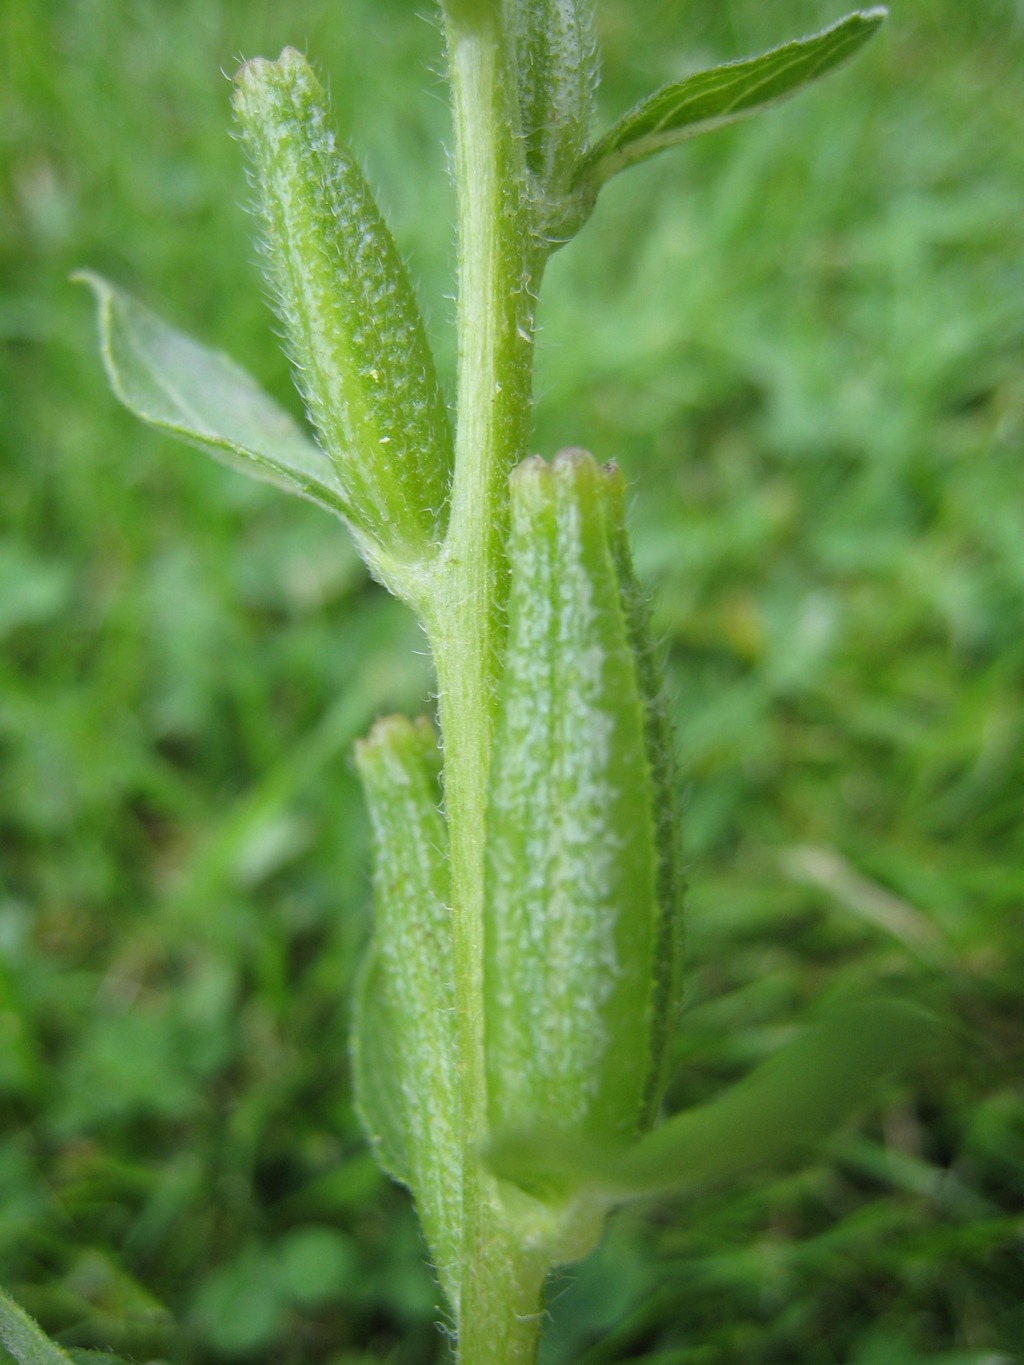 Oenothera deflexa (door Joke Schaminée-Sluis)